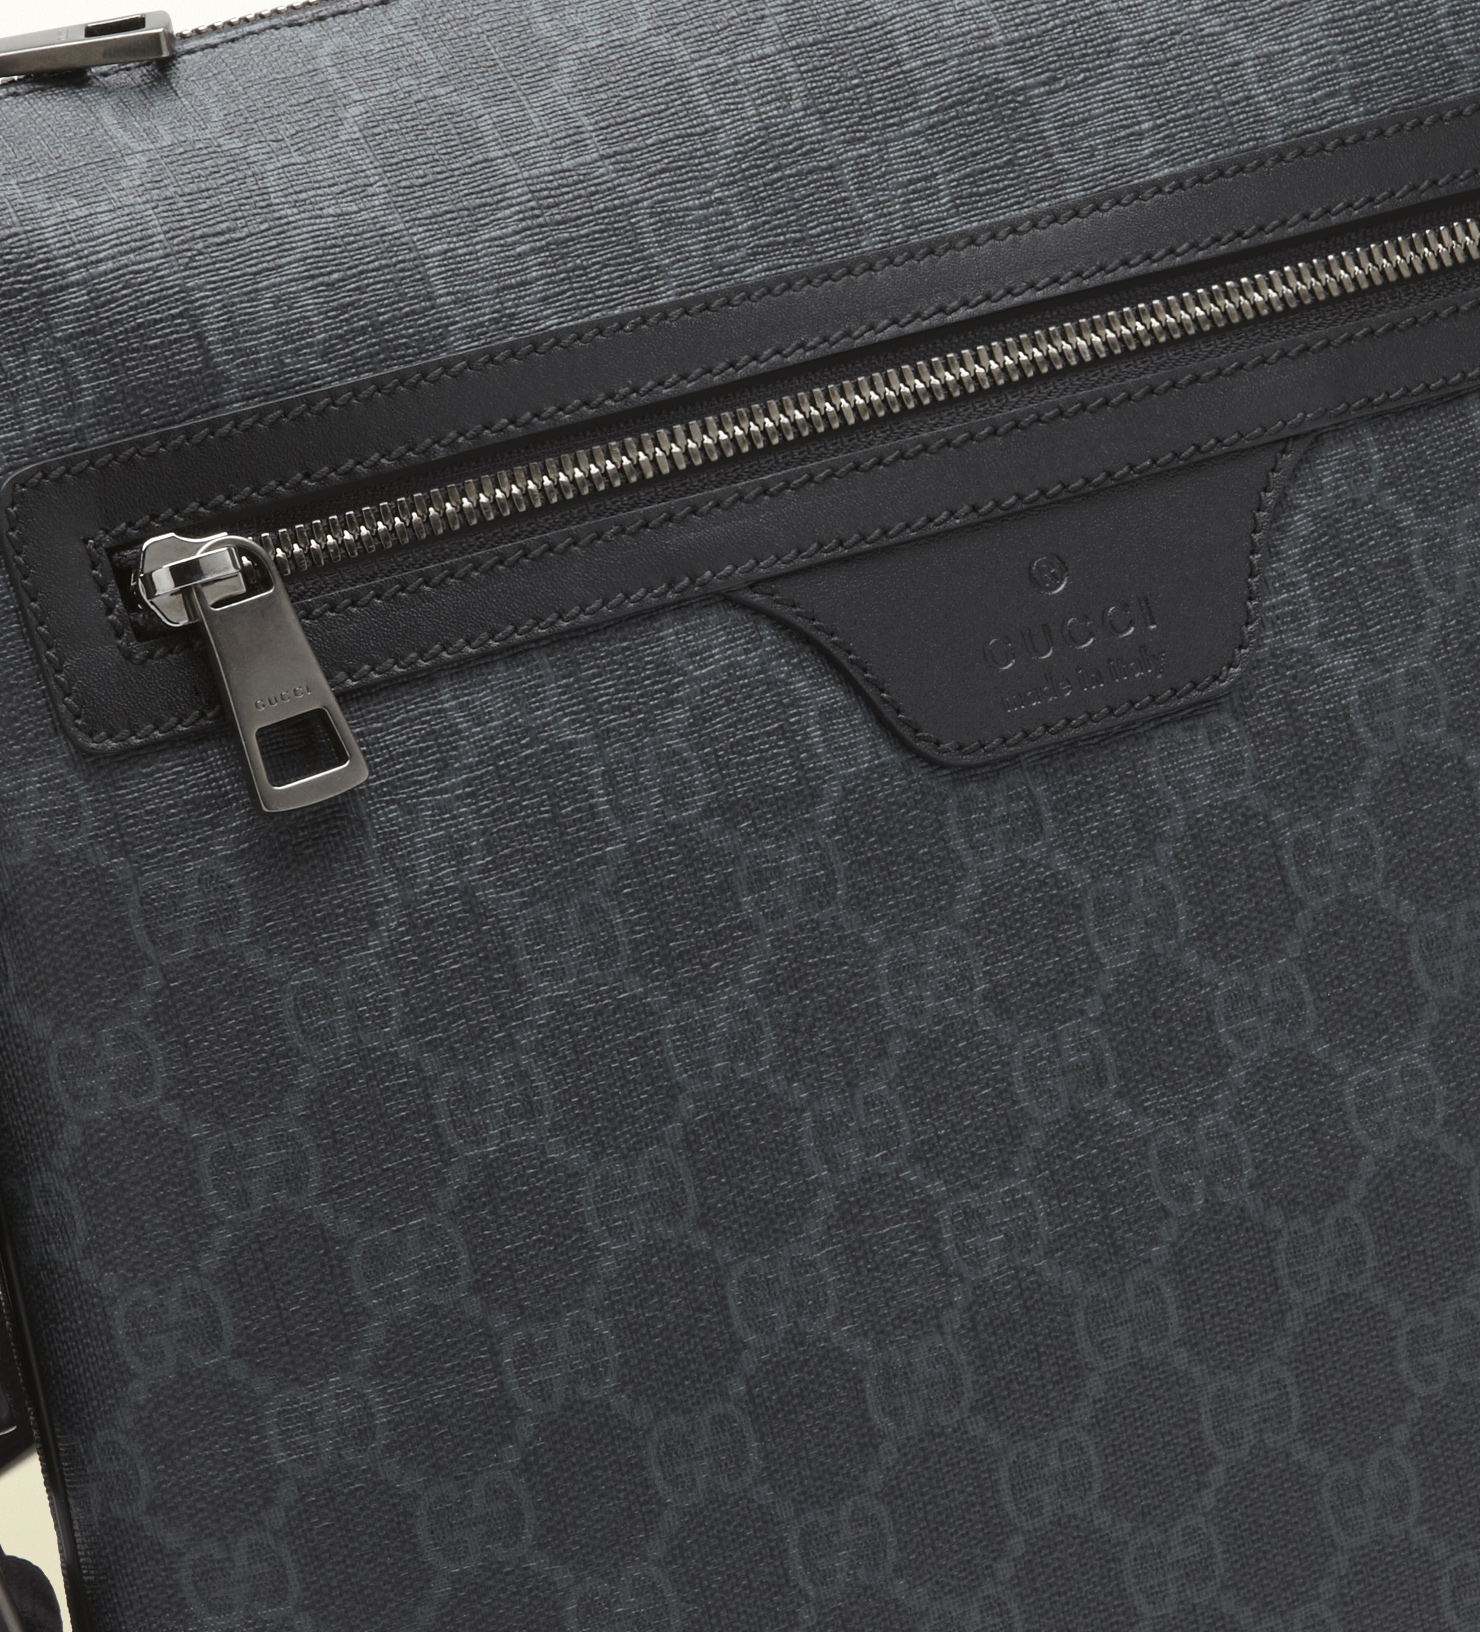 Gucci Gg Supreme Canvas Messenger Bag in Grey (Black) for Men - Lyst